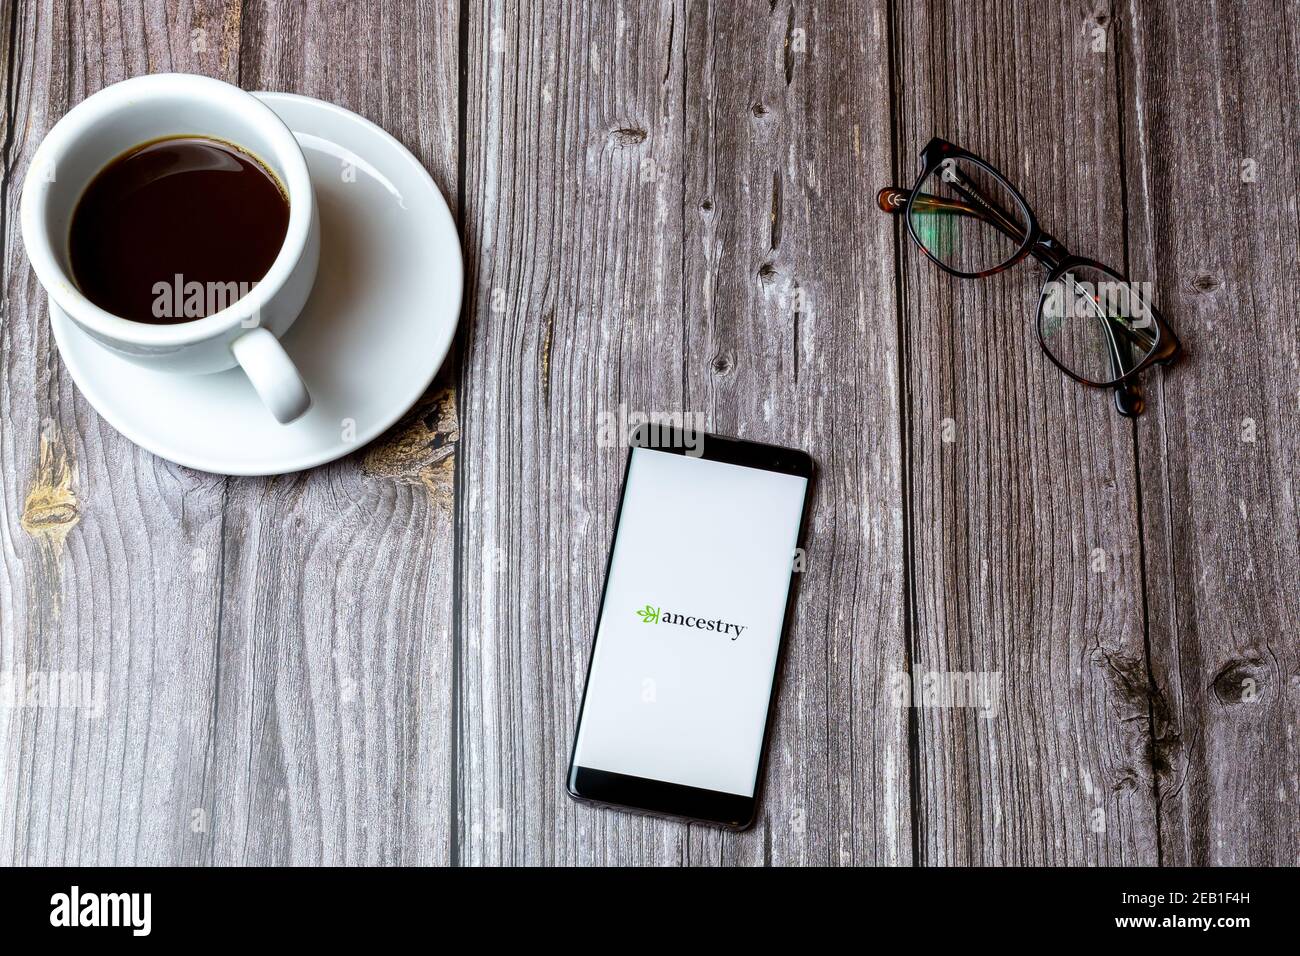 Ein Handy oder Handy auf einem Holz gelegt Tabelle mit der App Ancestry auf dem Bildschirm neben geöffnet Ein Kaffee Stockfoto